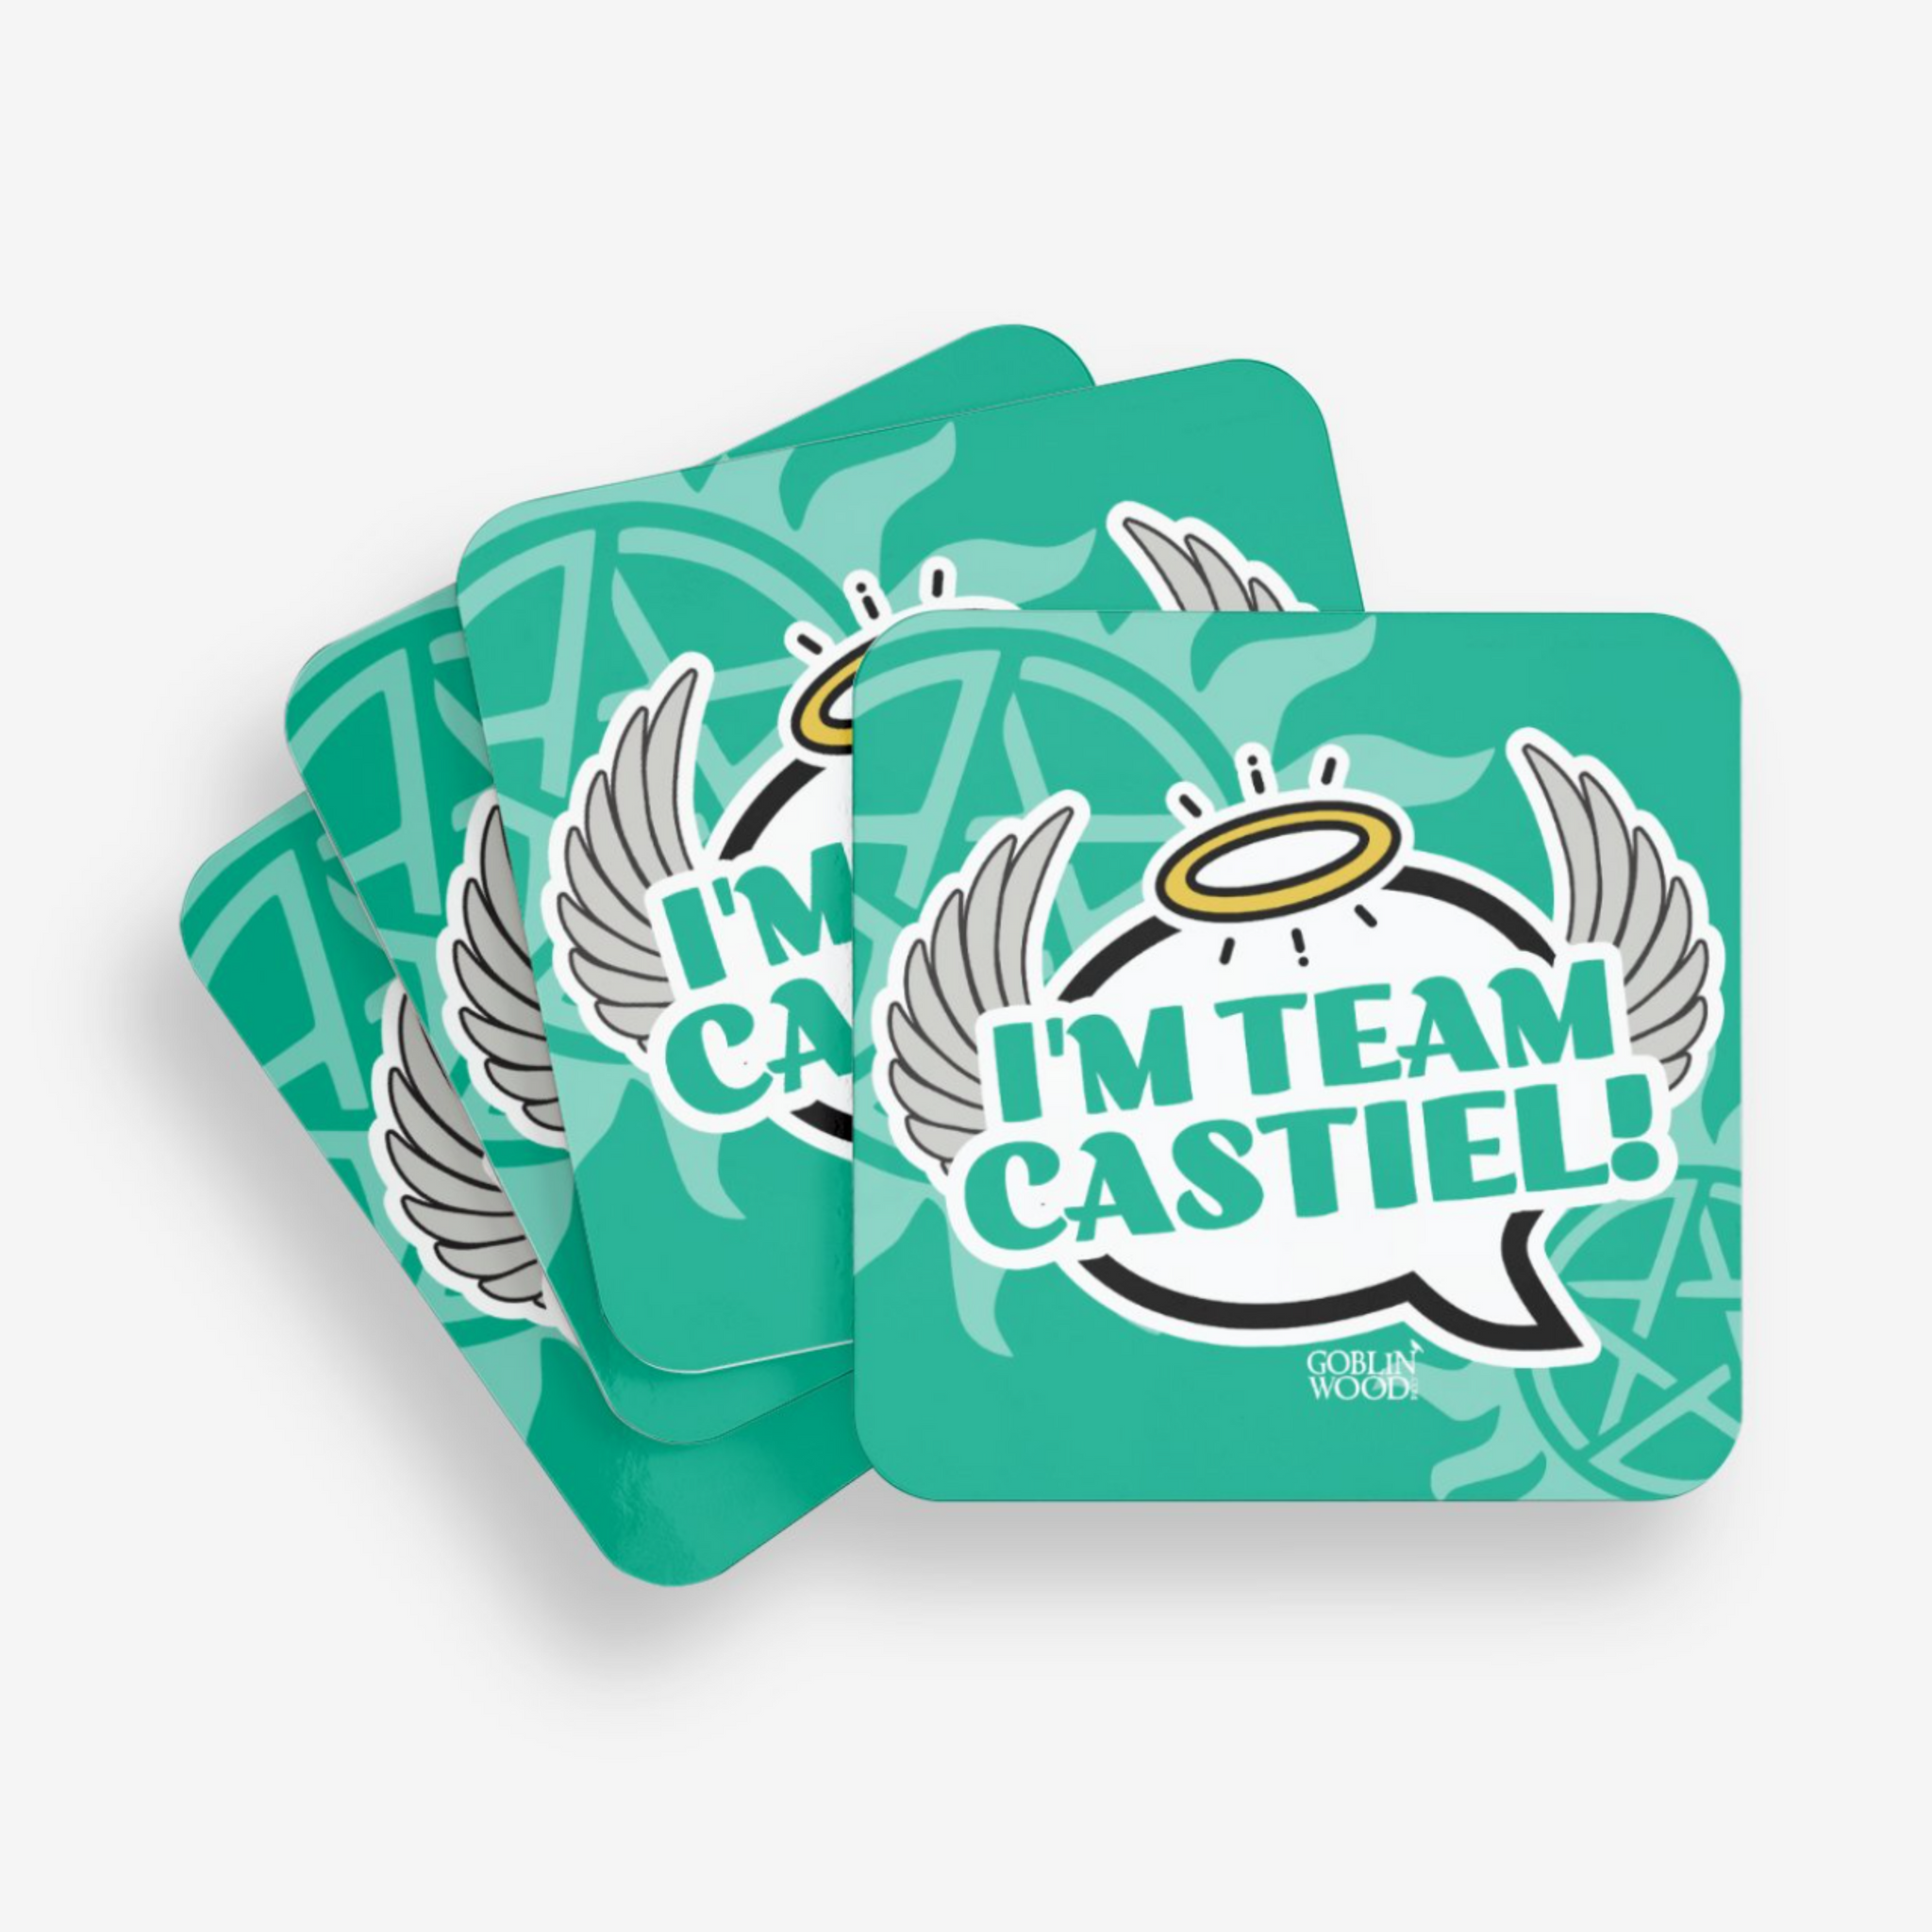 I'm Team Castiel! Coaster - Supernatural Inspired